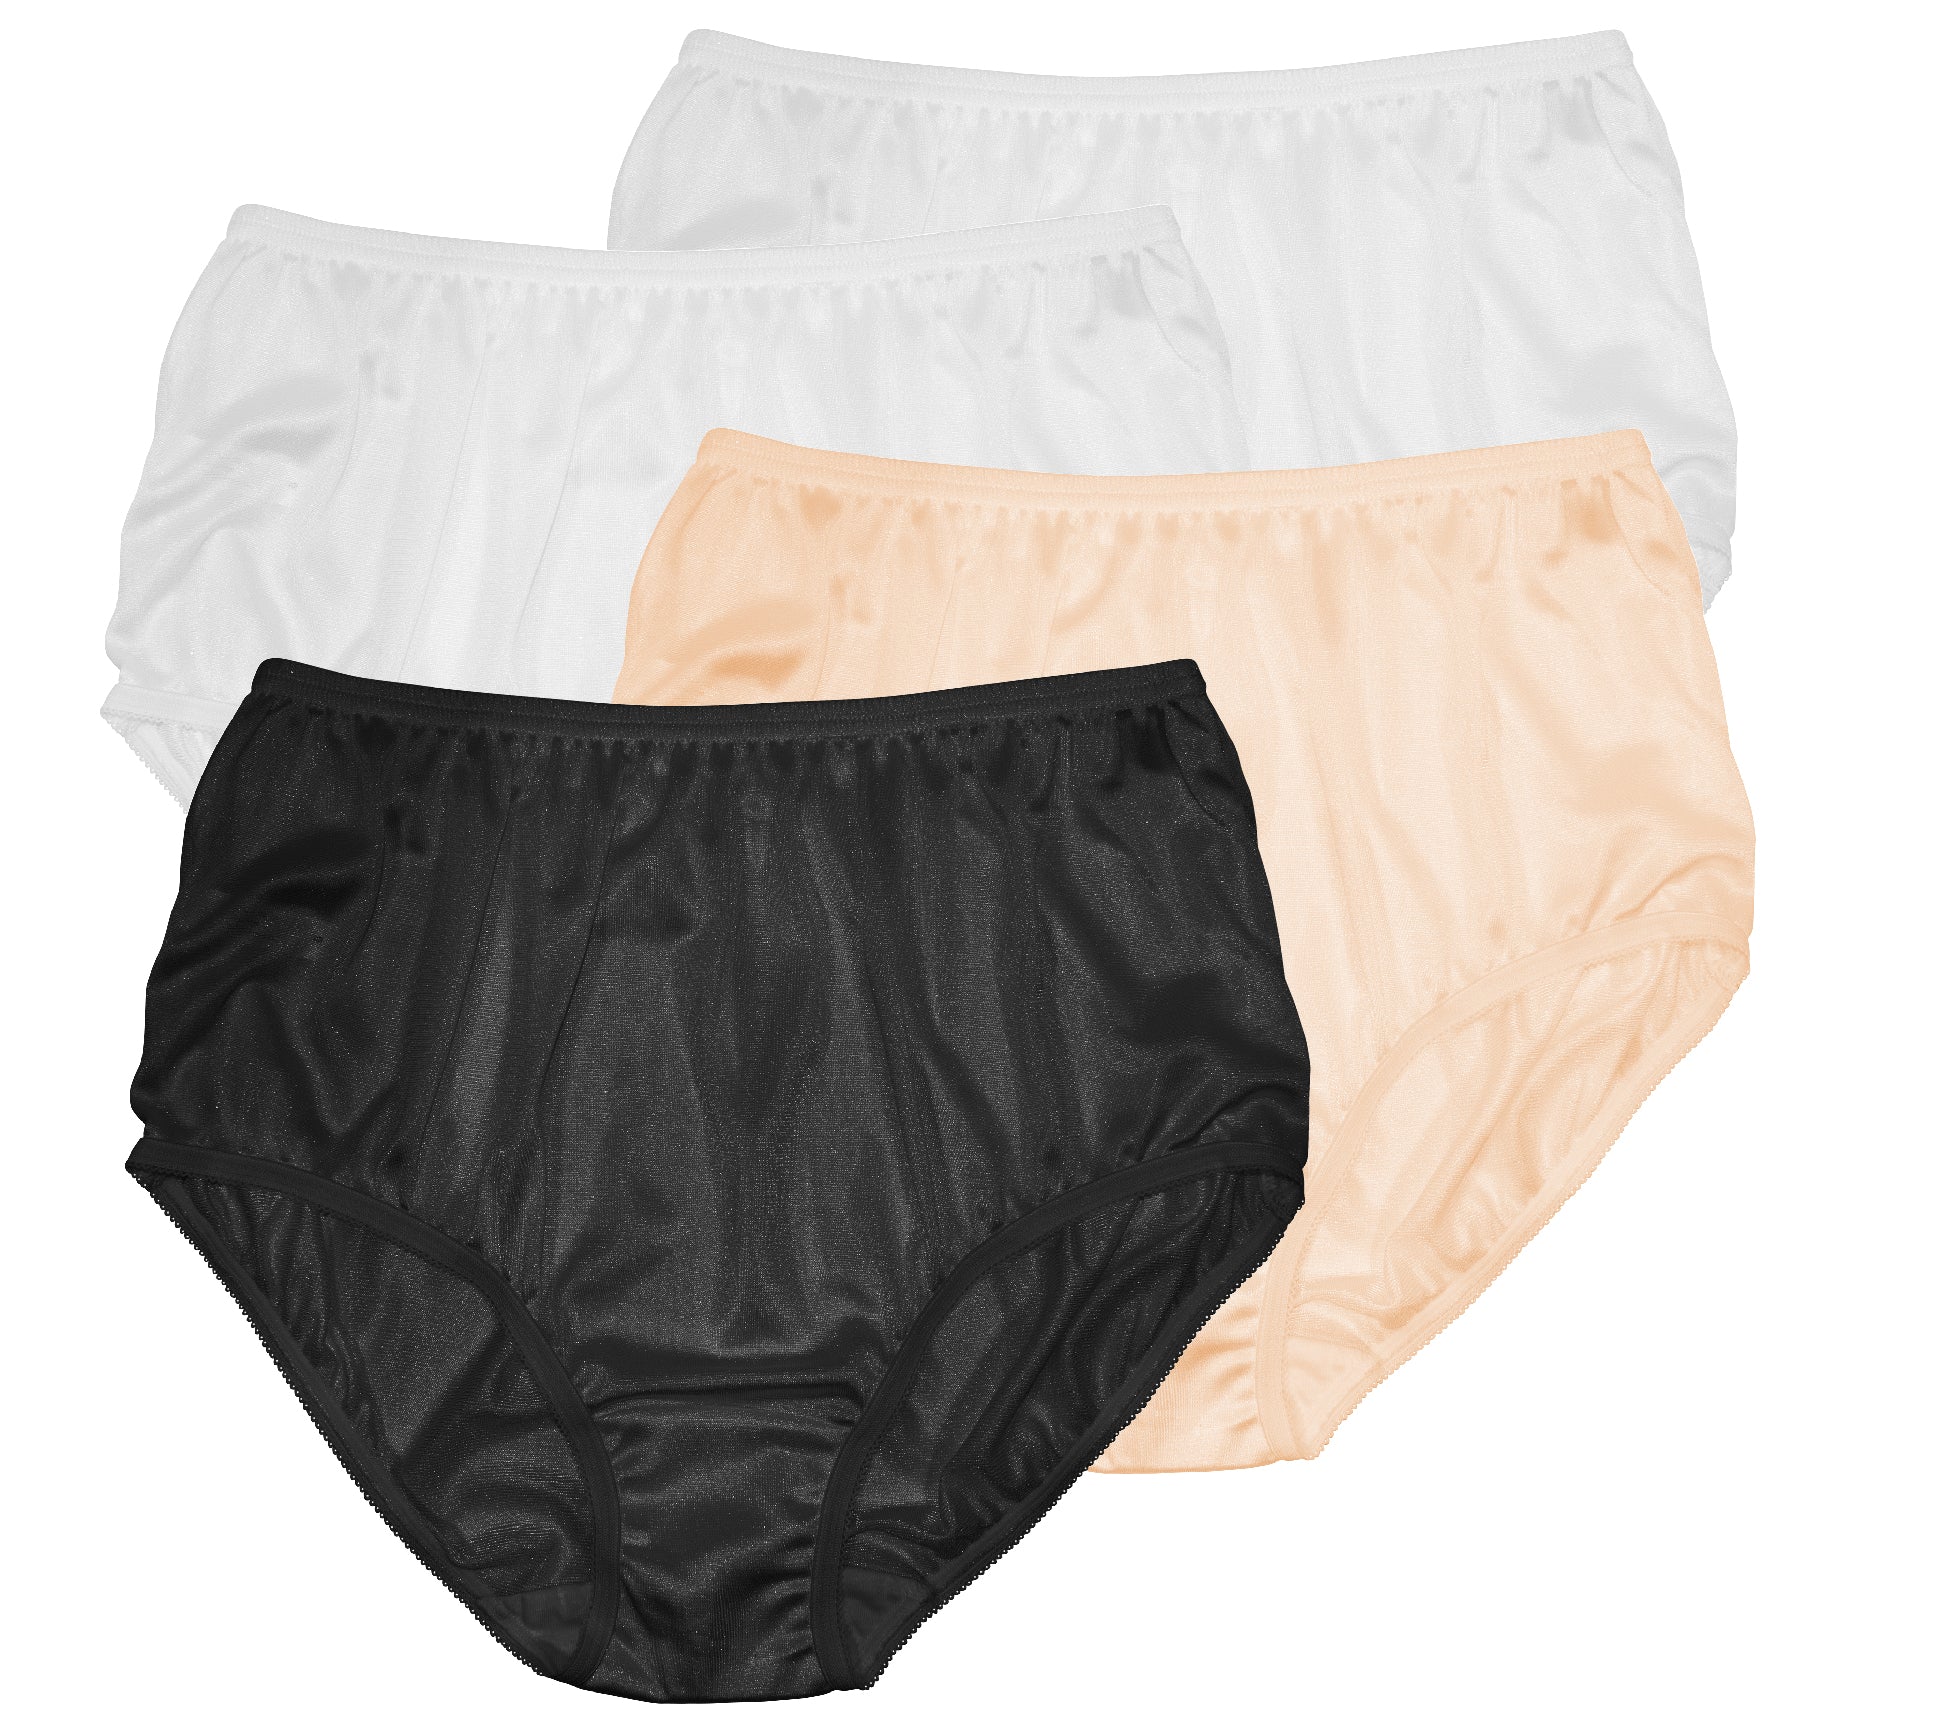 Beauty Lingerie - N02818 100% Nylon/ Underwear/ Panty/ High Rise